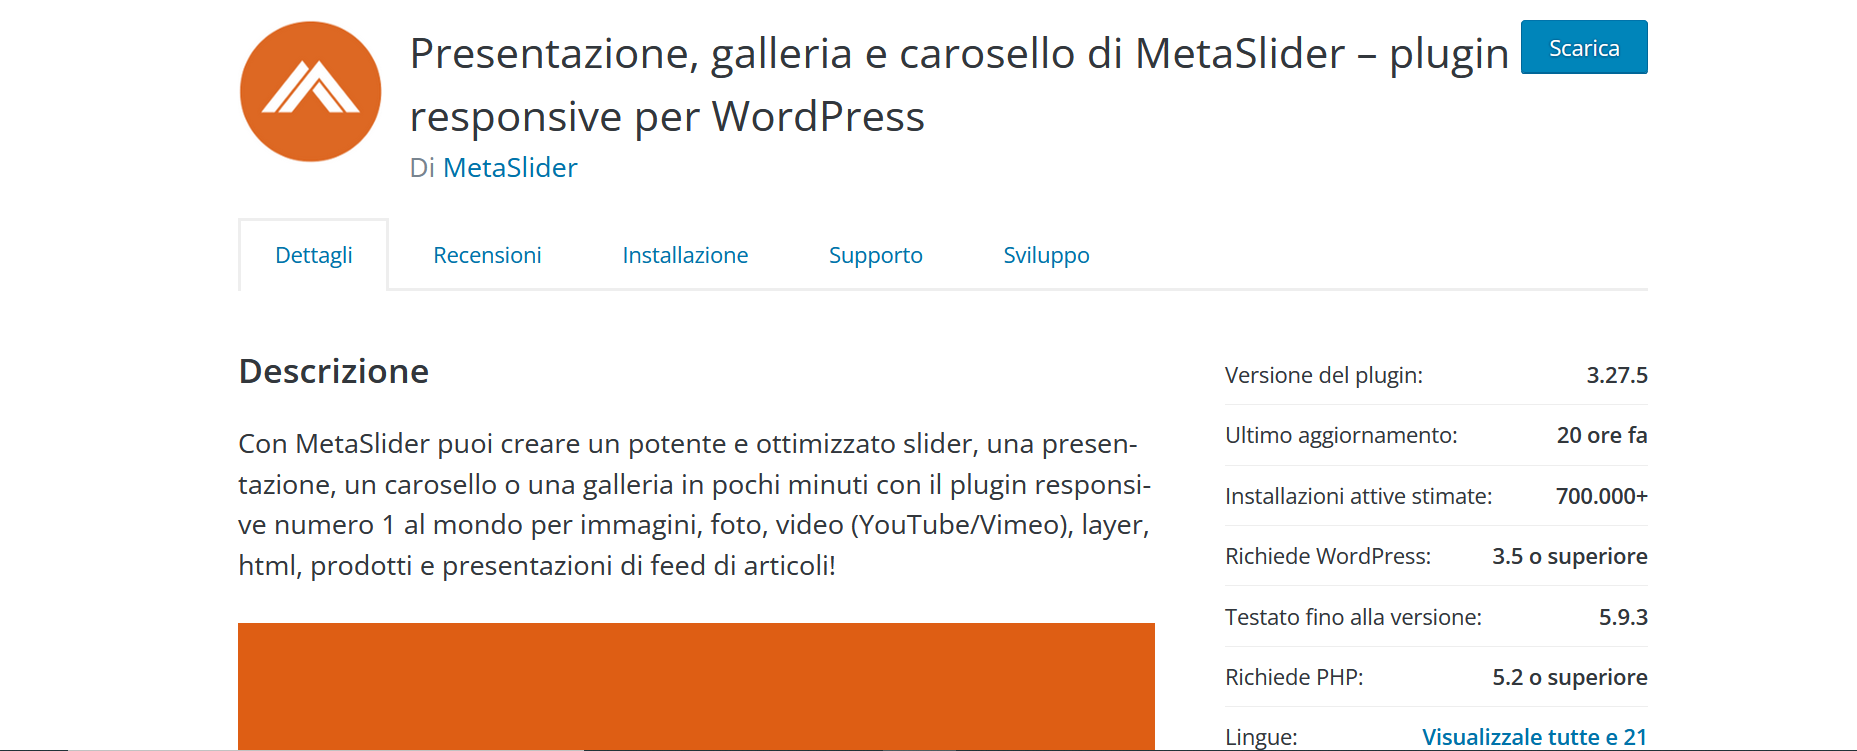 Screenshot del plugin MetaSlider di WordPress